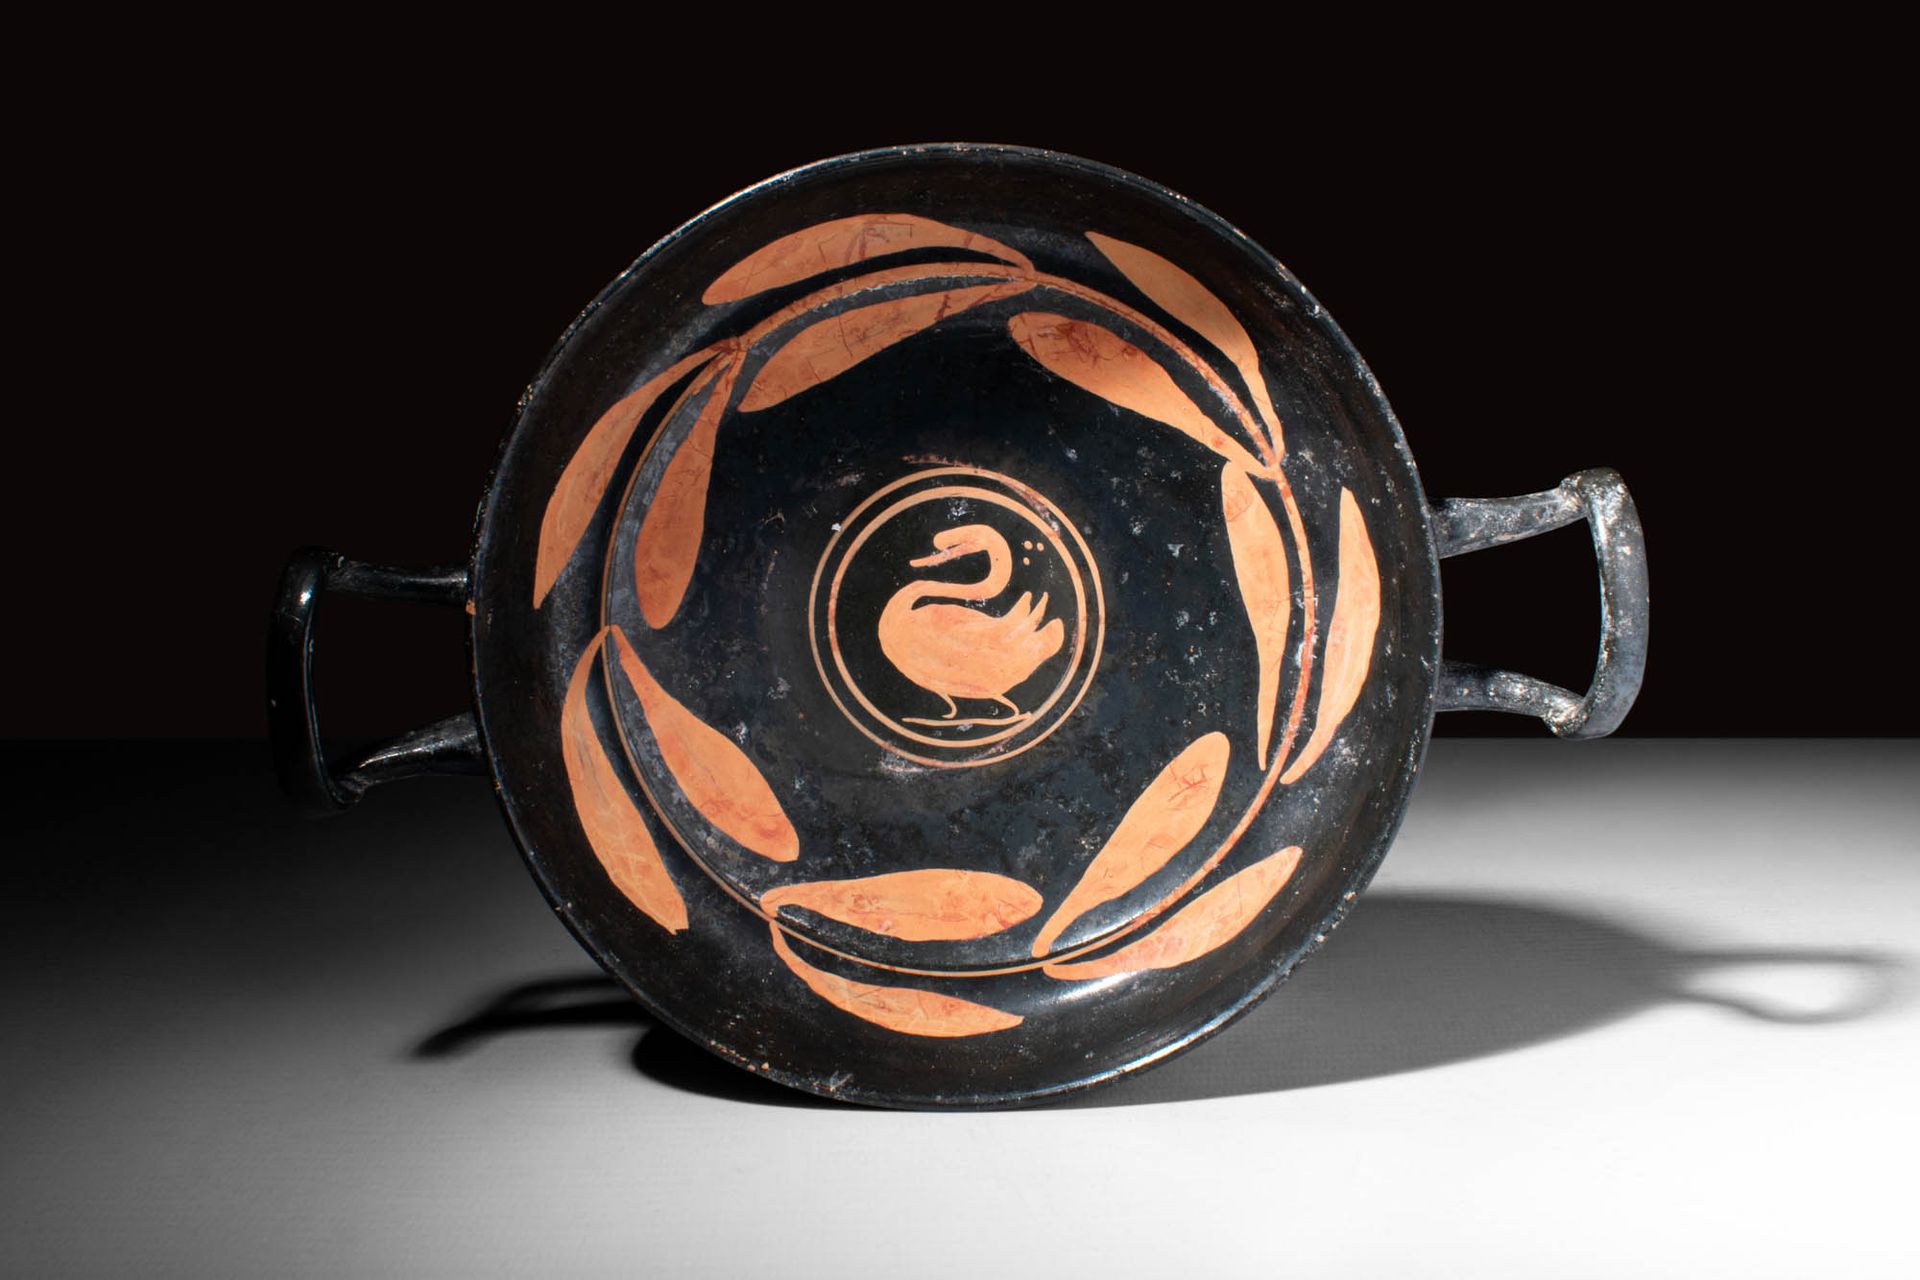 GREEK APULIAN XENON SWAN KYLIX 约公元前 340 - 325 年。公元前 340 - 325 年。
这是一件精美的阿普利亚陶器，低&hellip;